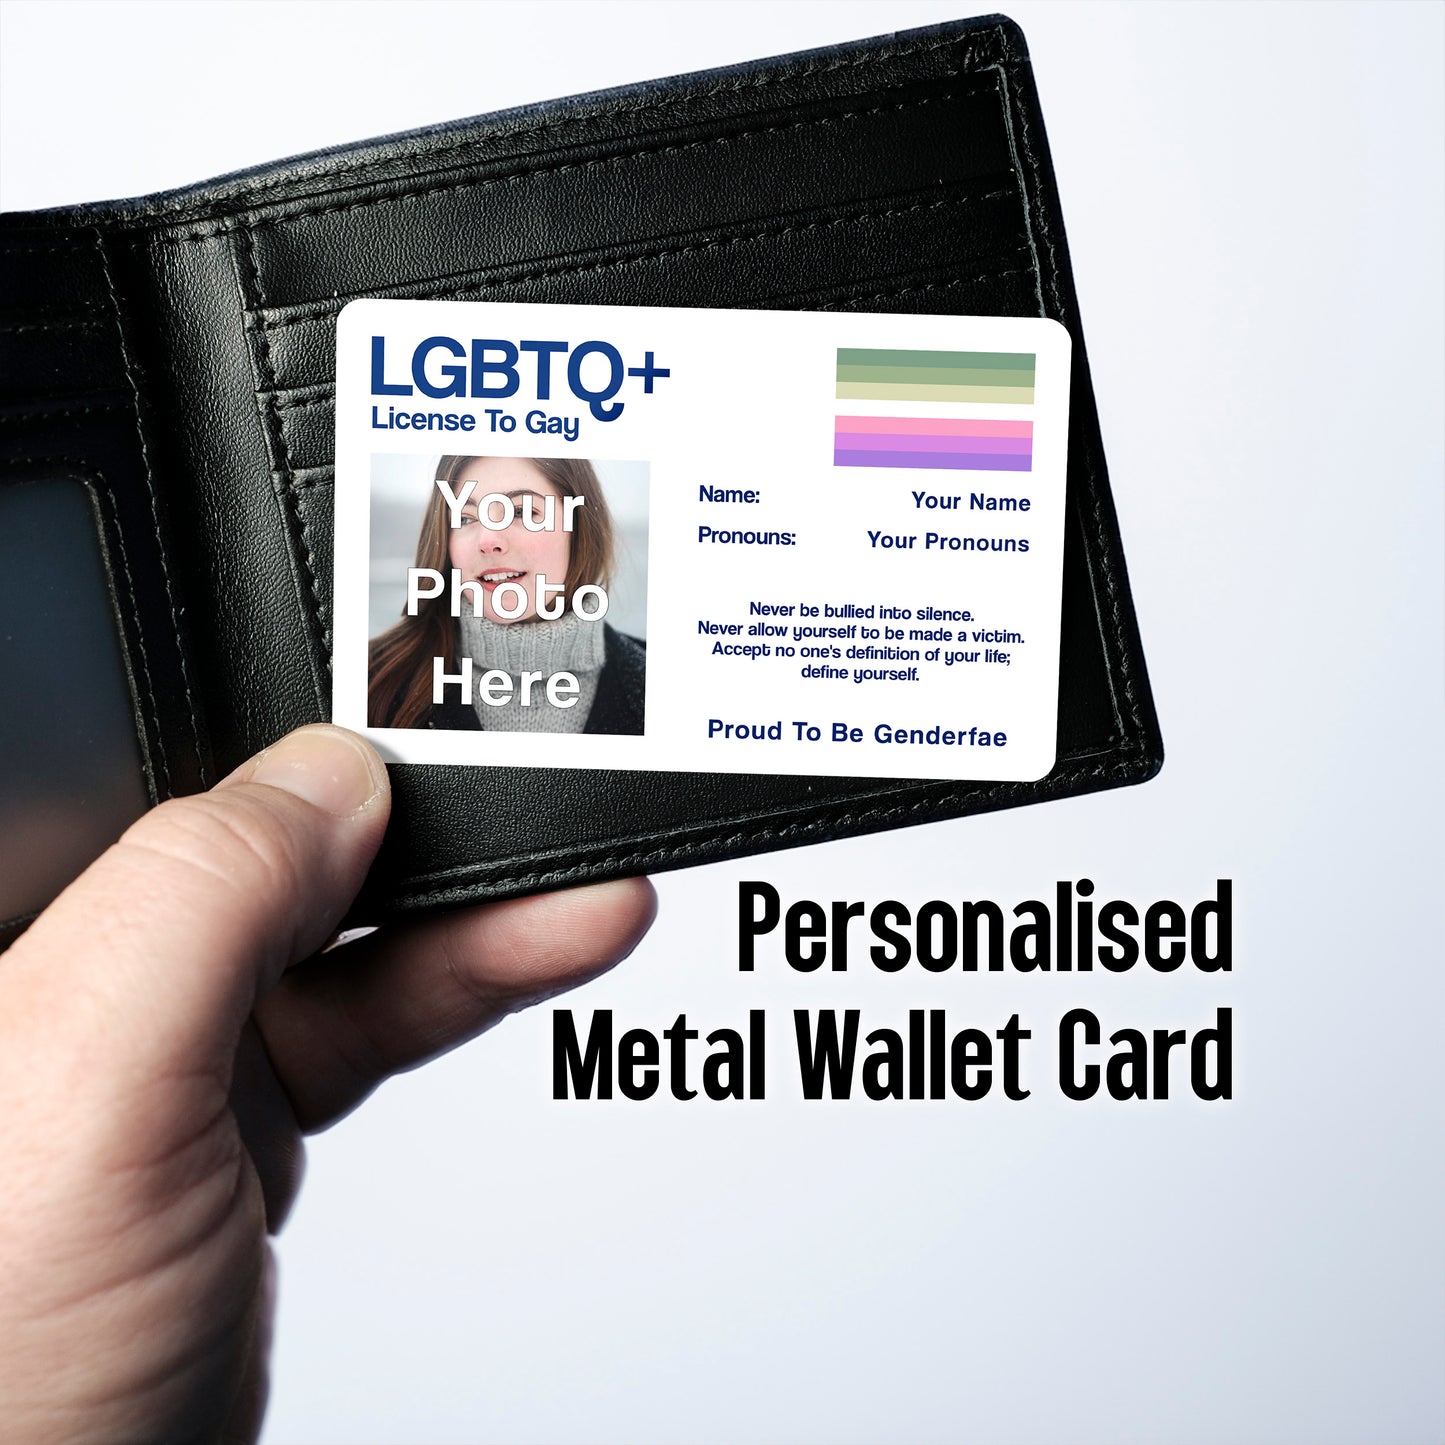 Genderfae license to gay